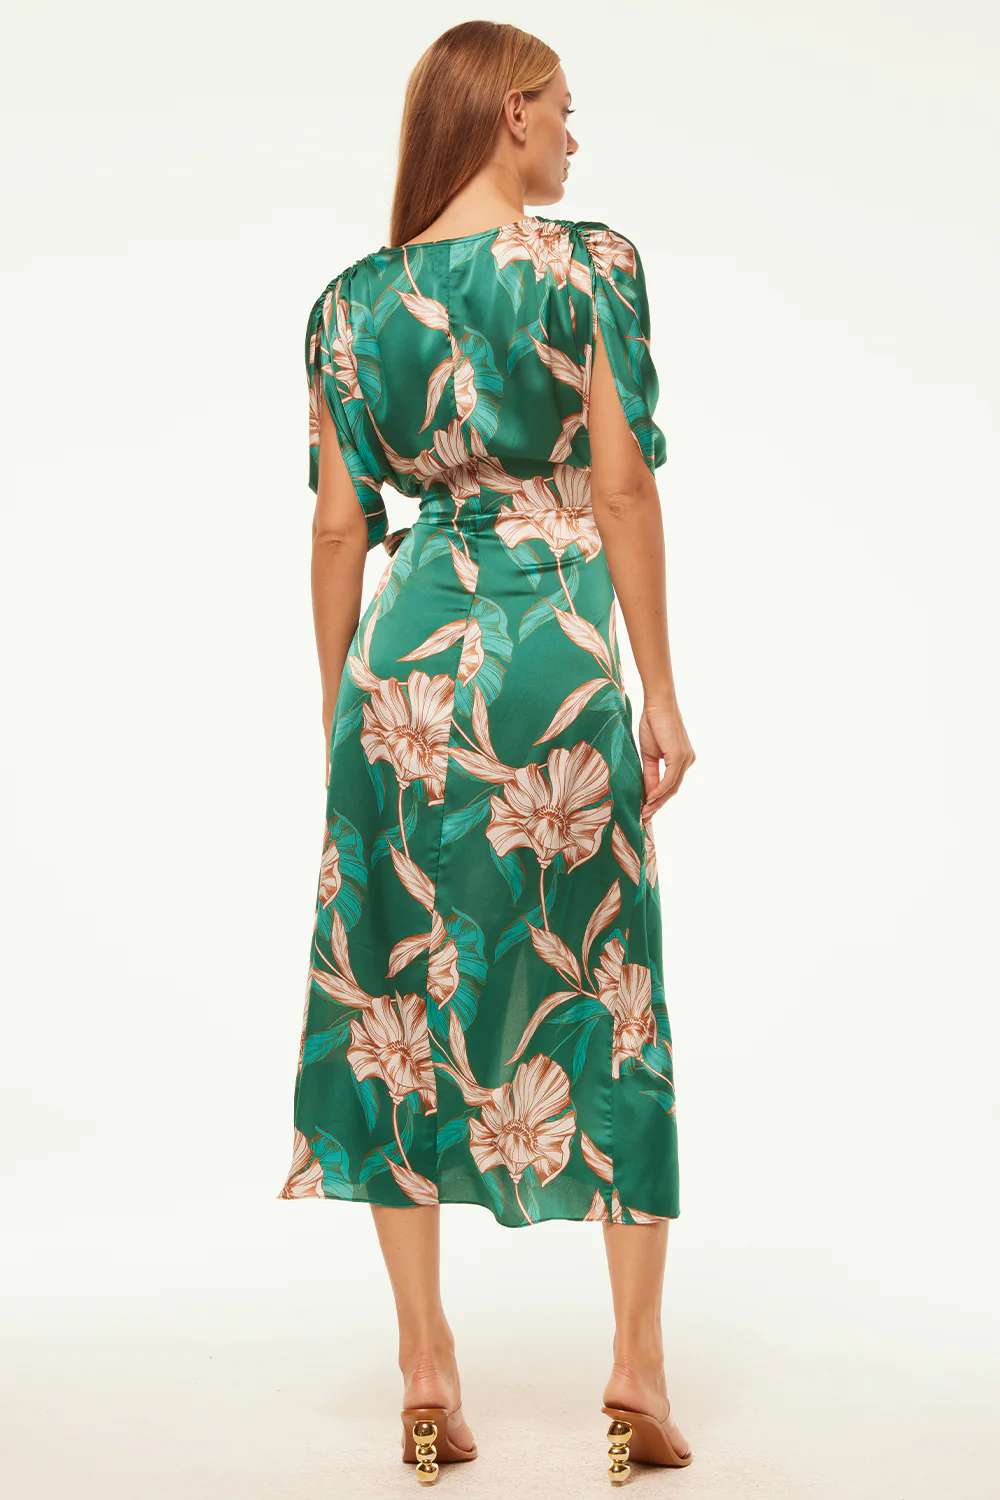 Misa Francesca Dress - Size XL Available